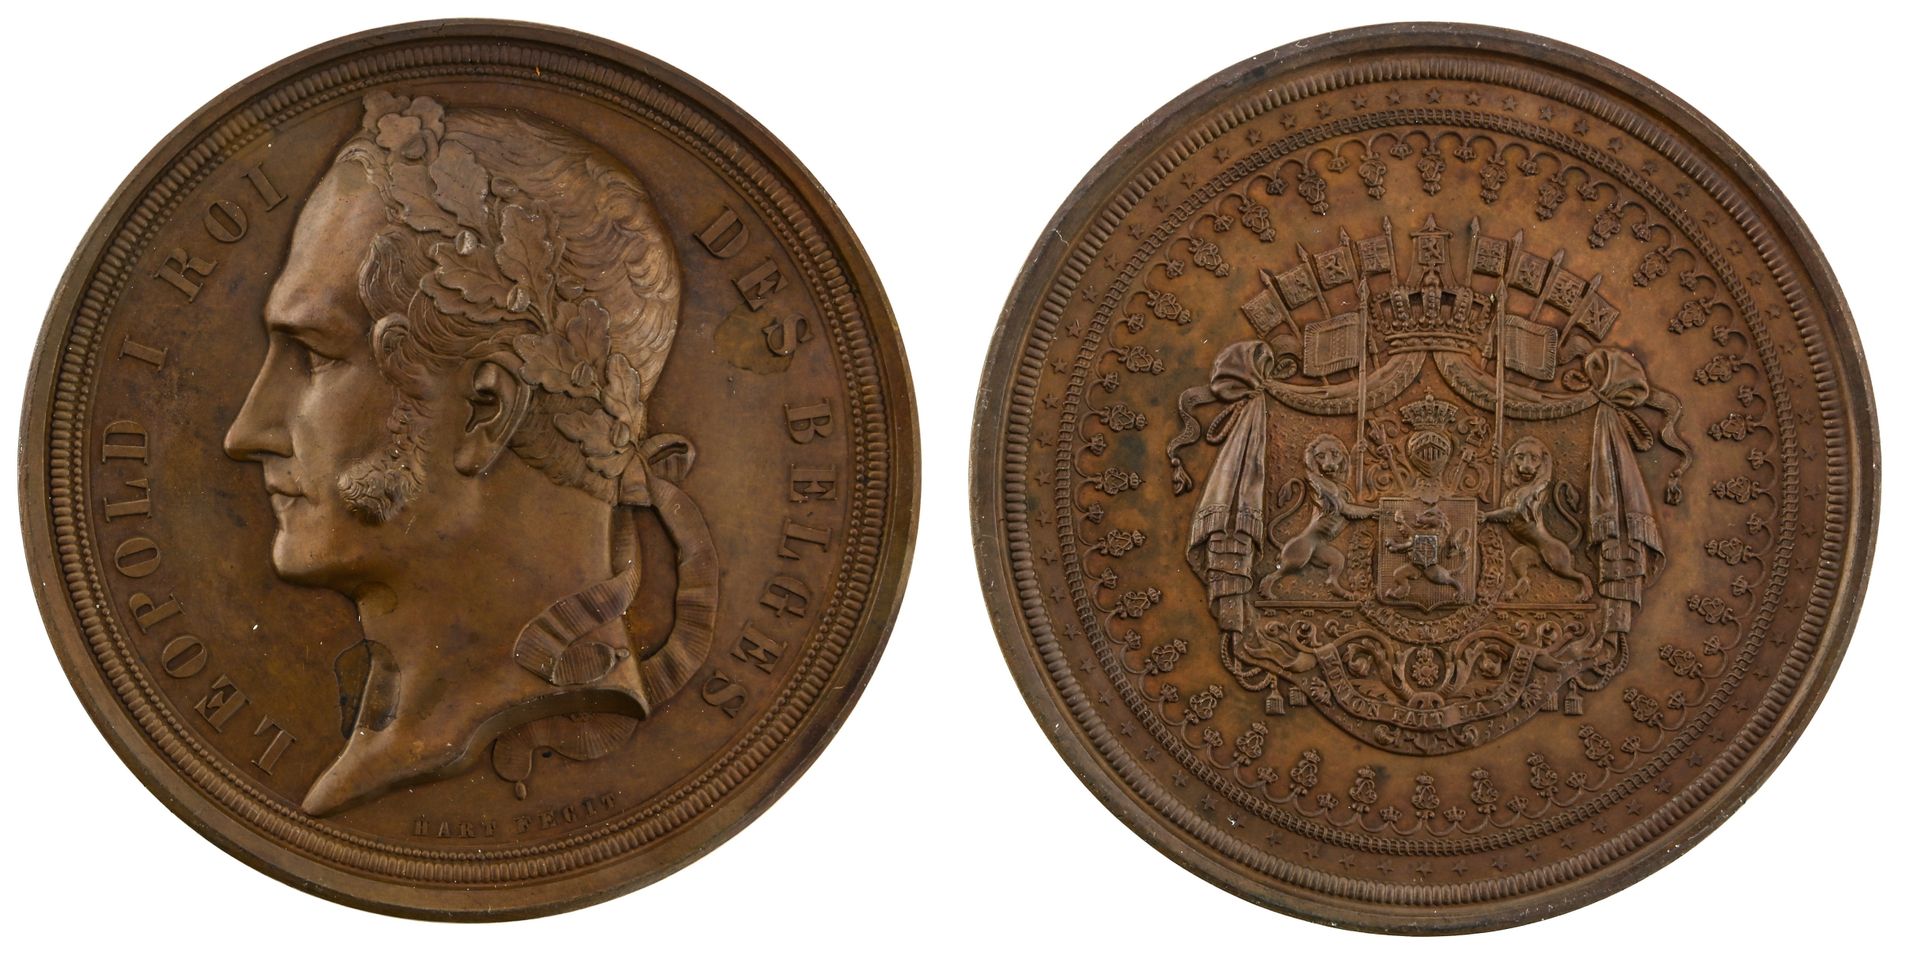 BELGIQUE, 比利时。

利奥波德一世（1831-1865）。



铜质奖章，由哈特制作，73毫米，未注明日期，头像为月桂冠，比利时国王莱奥波德一世，半&hellip;